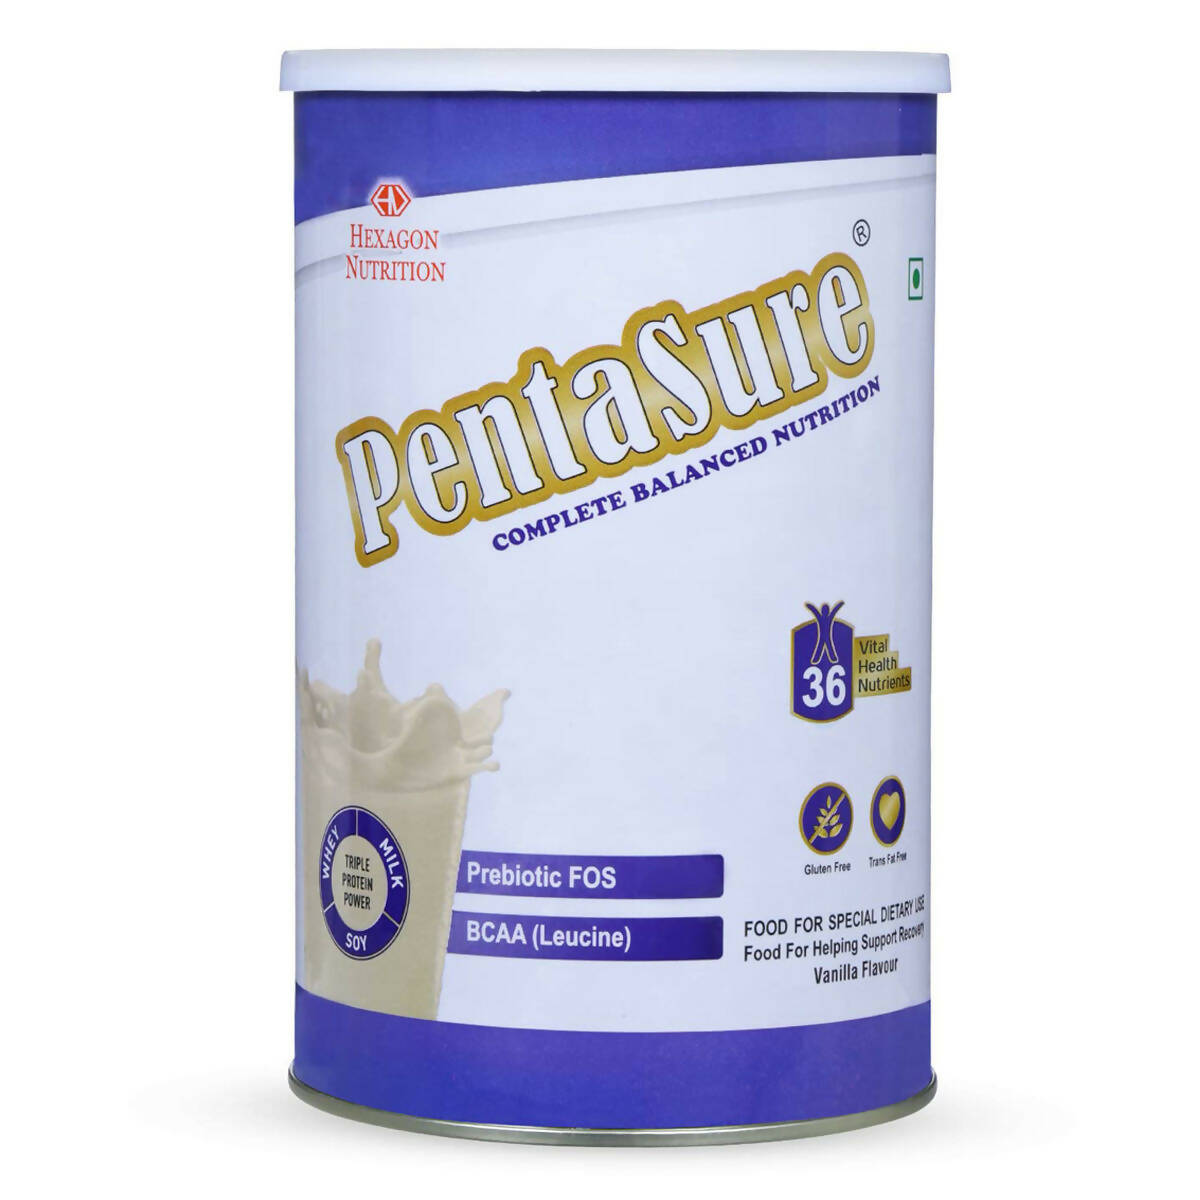 PentaSure Complete Nutritional Powder - Vanilla Flavor - BUDNE